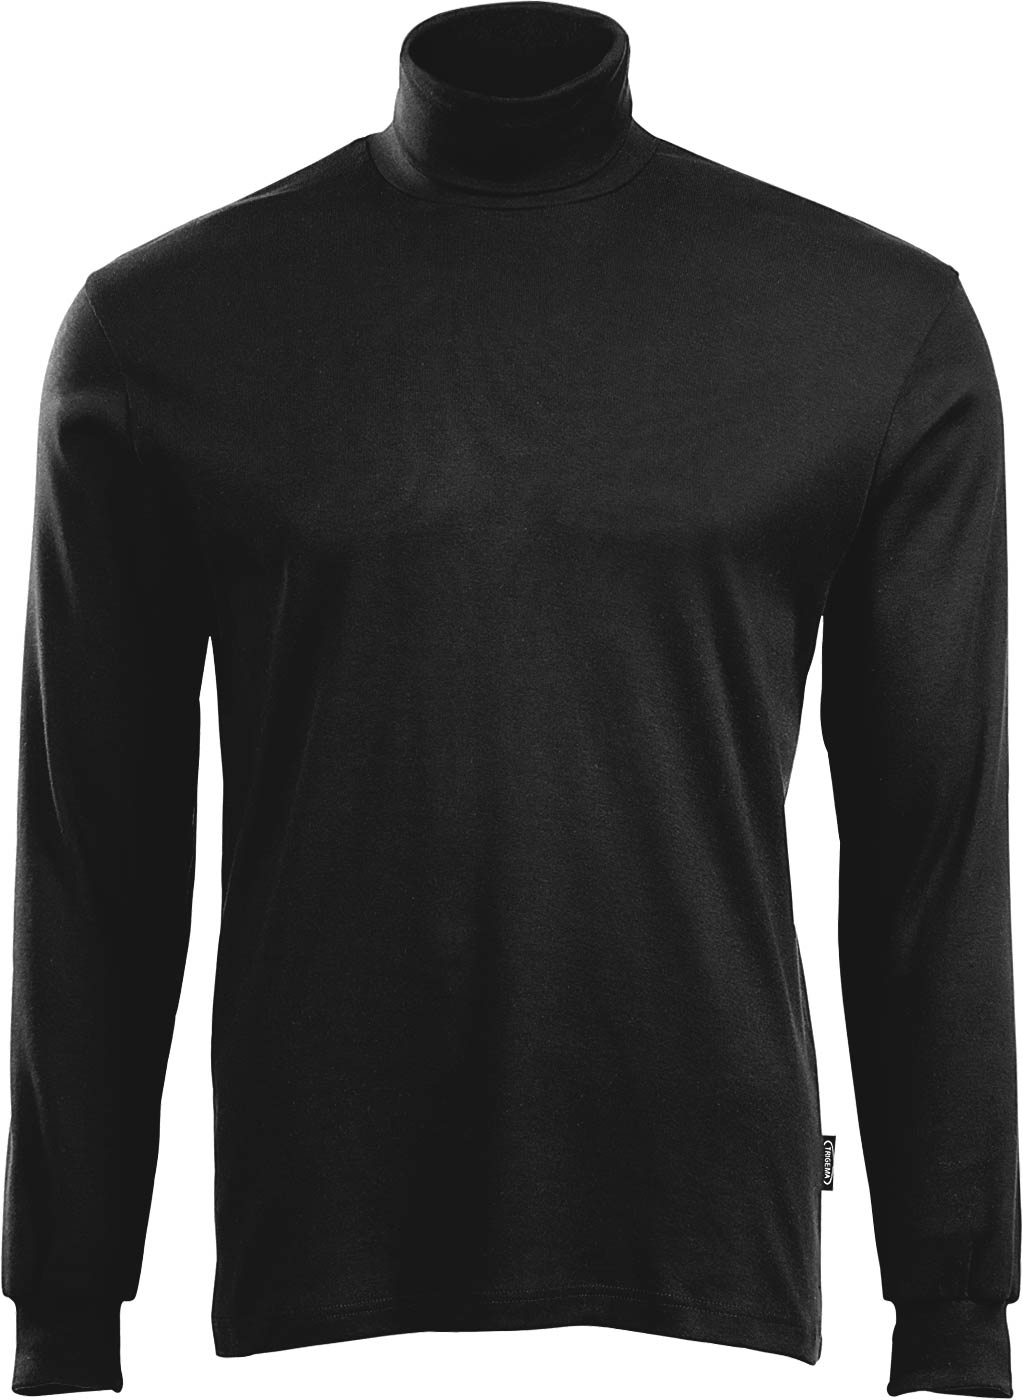 Rollkragen Langarm-Shirt in schwarz - 100% Trigema Baumwolle